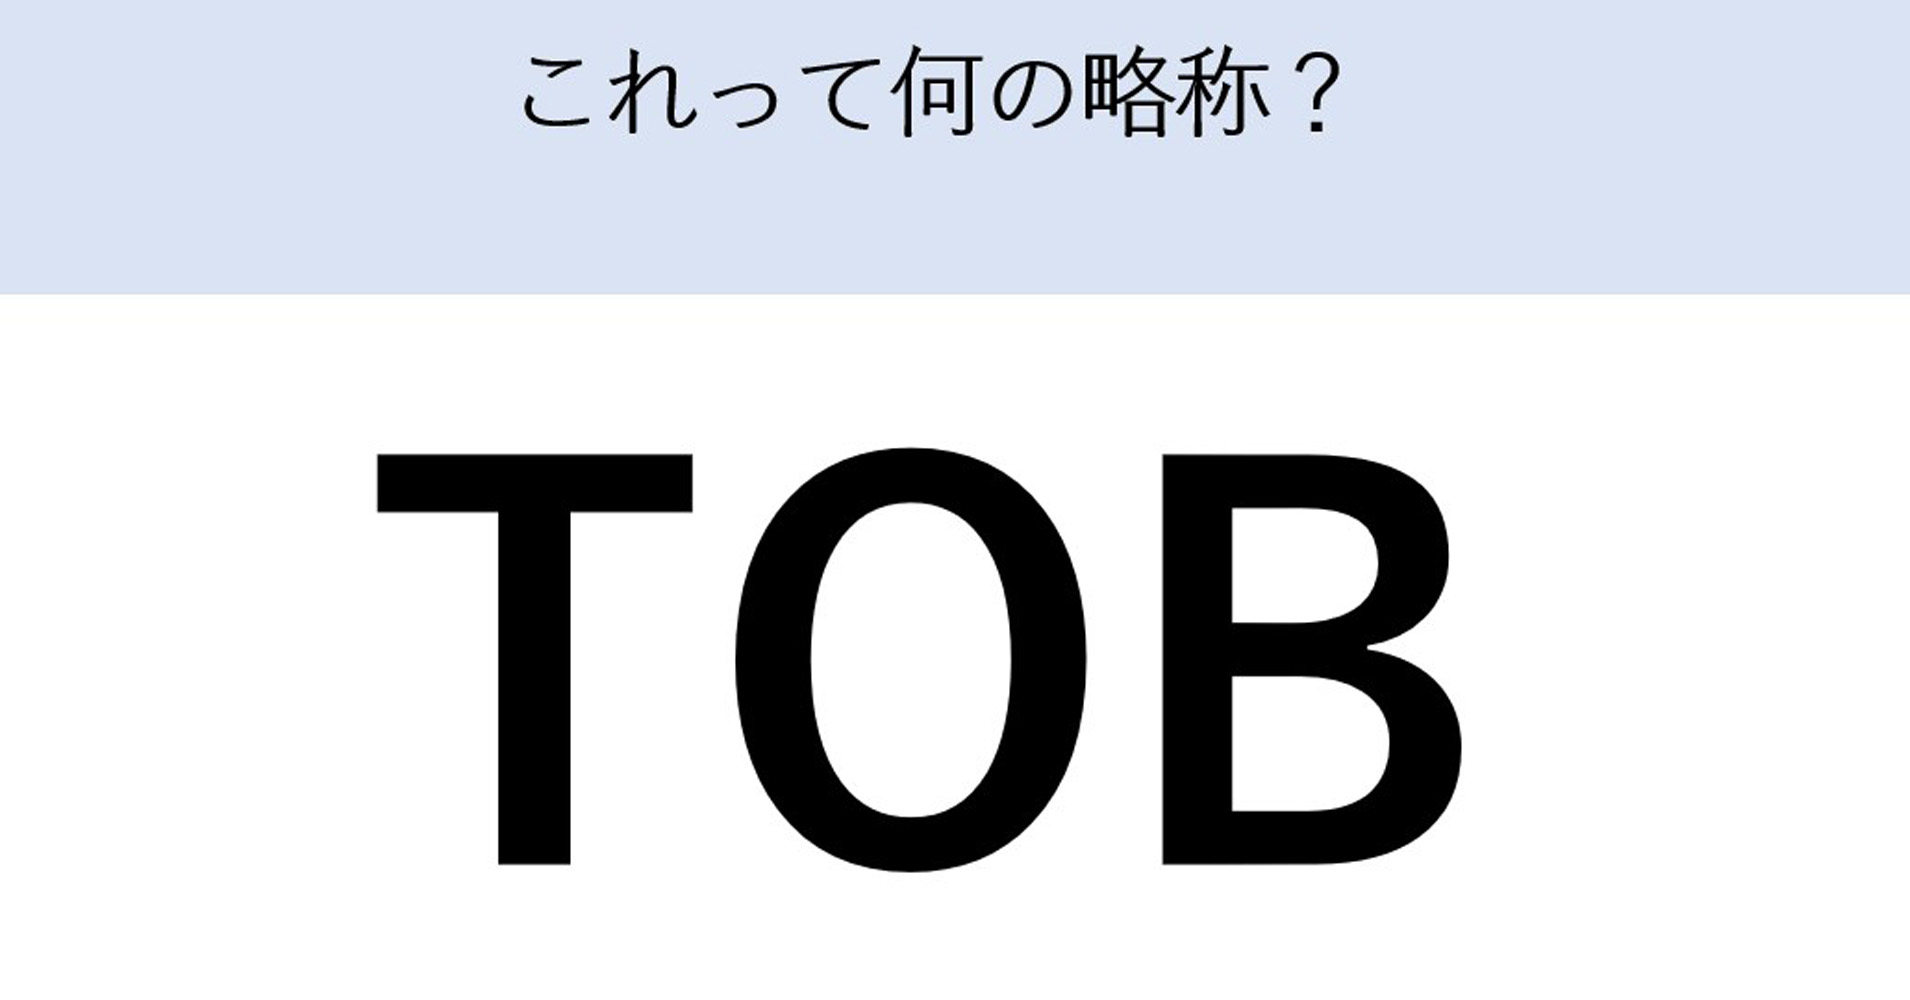 オイシックス、シダックスへのTOB成立　ところで「TOB」って何？　過去にはニトリ、NTTも実施